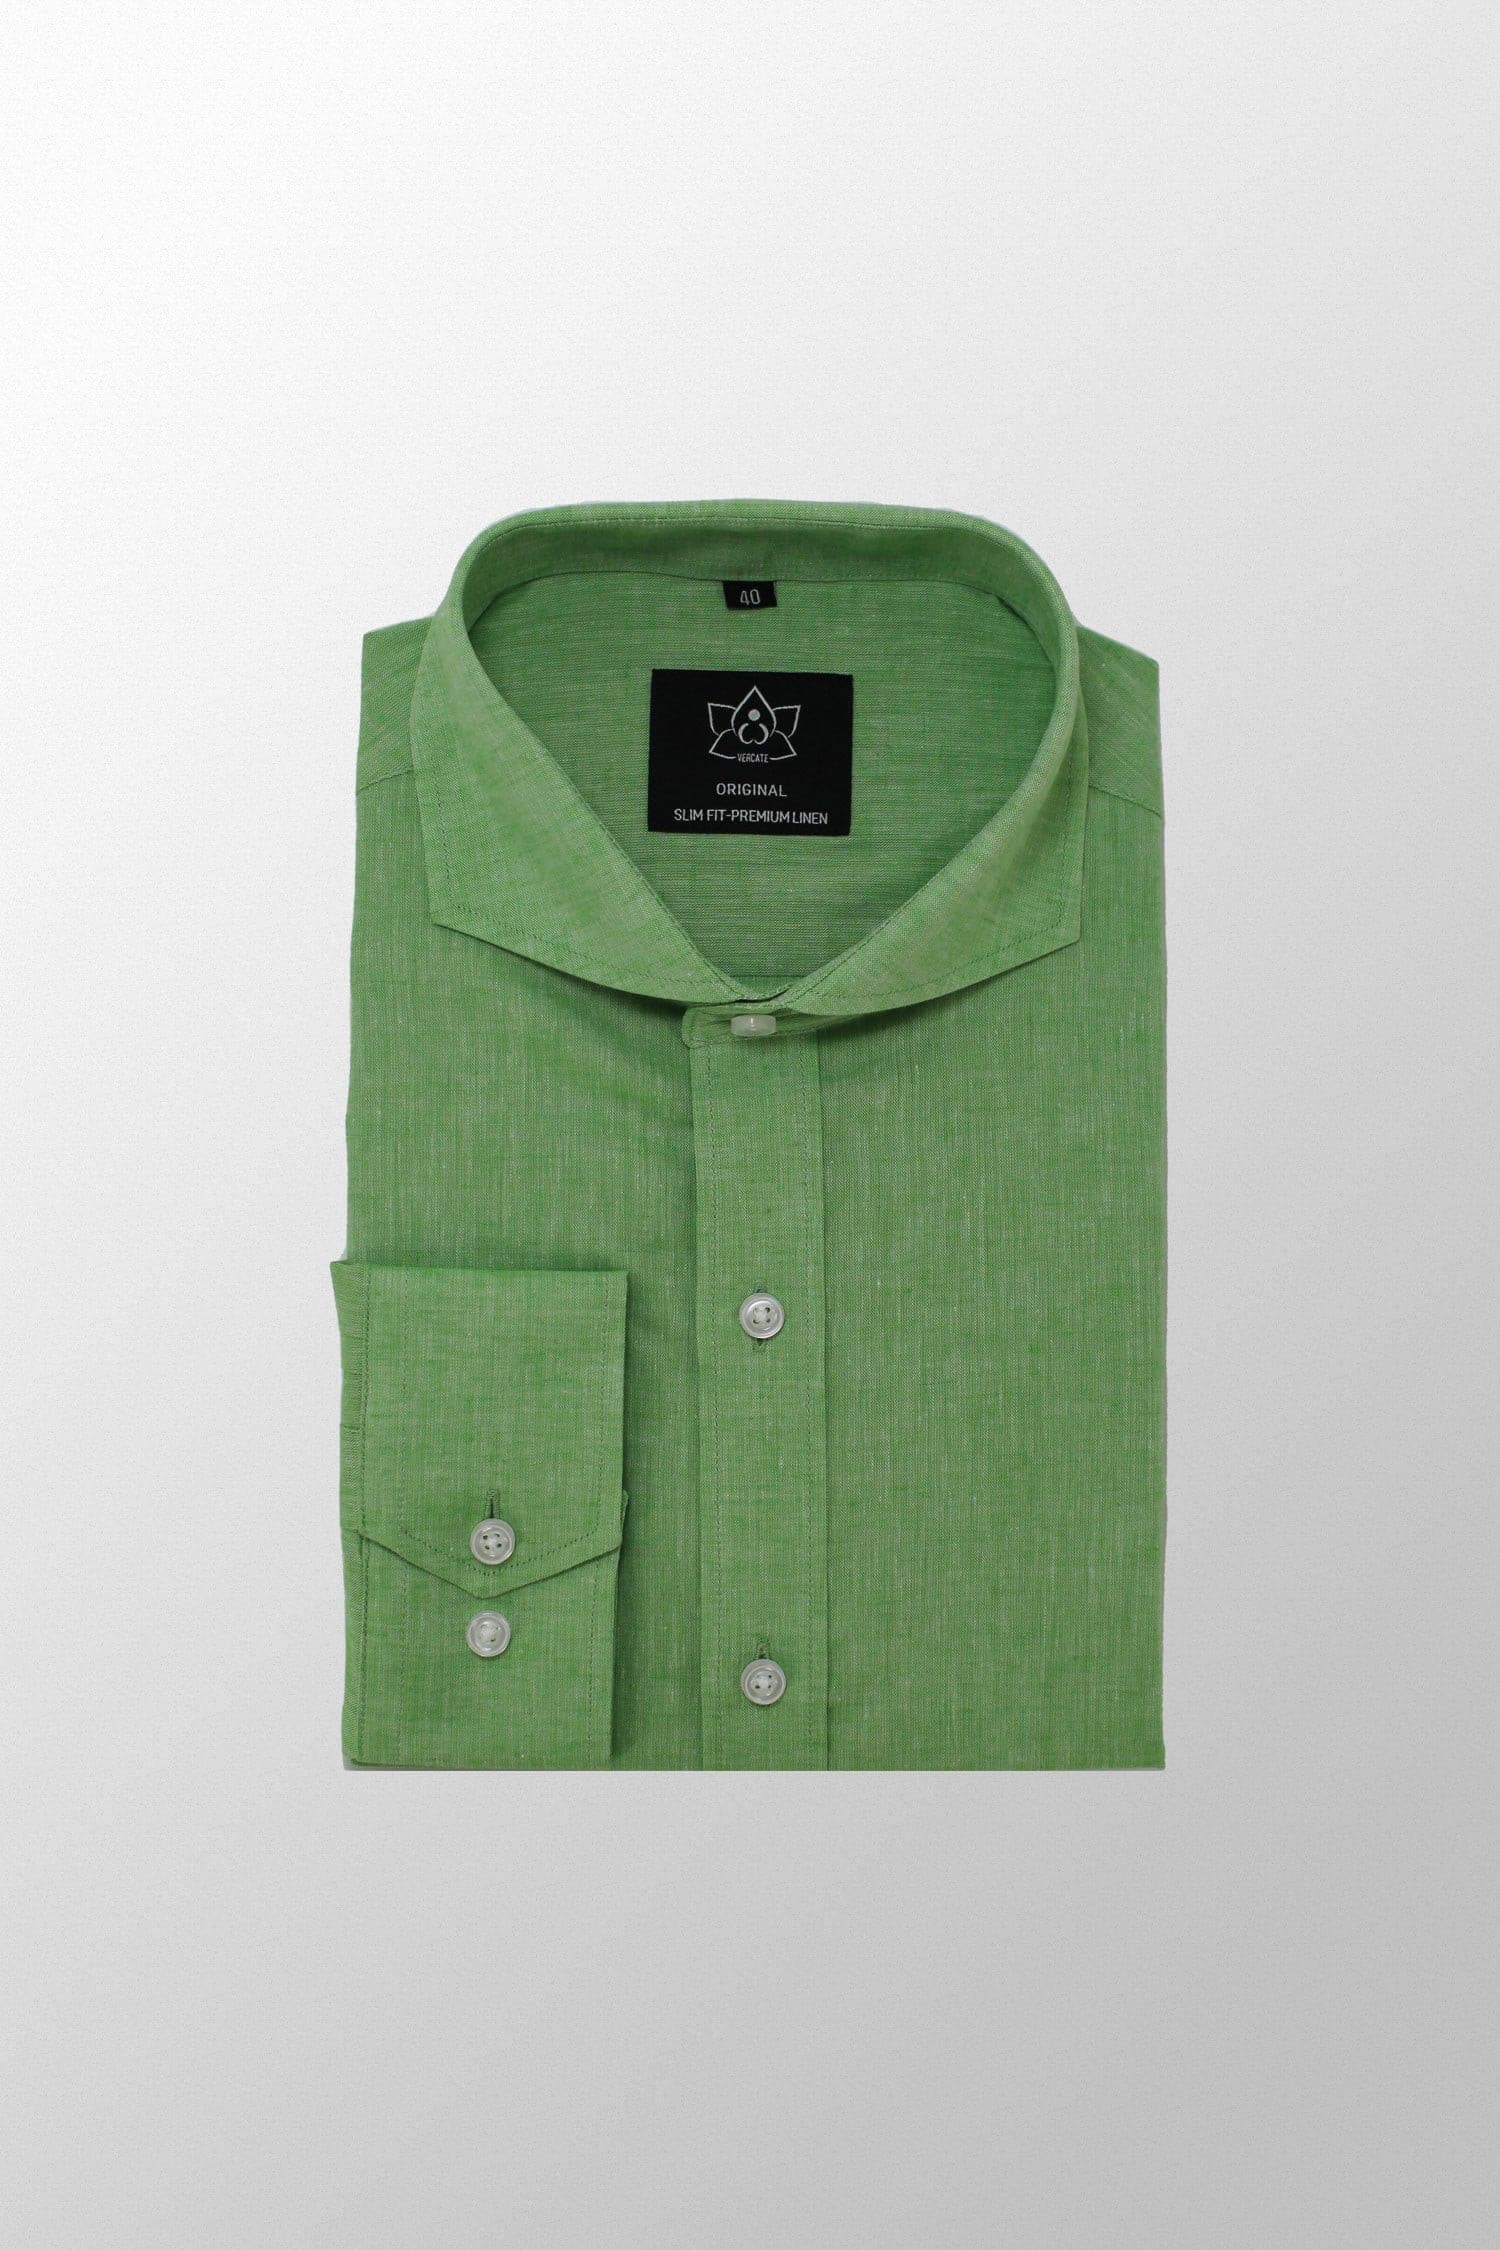 Lichtgroen Overhemd - Premium Linnen - Overhemd - Vercate - Vercate - Overhemden - Strijkvrije overhemden - Heren